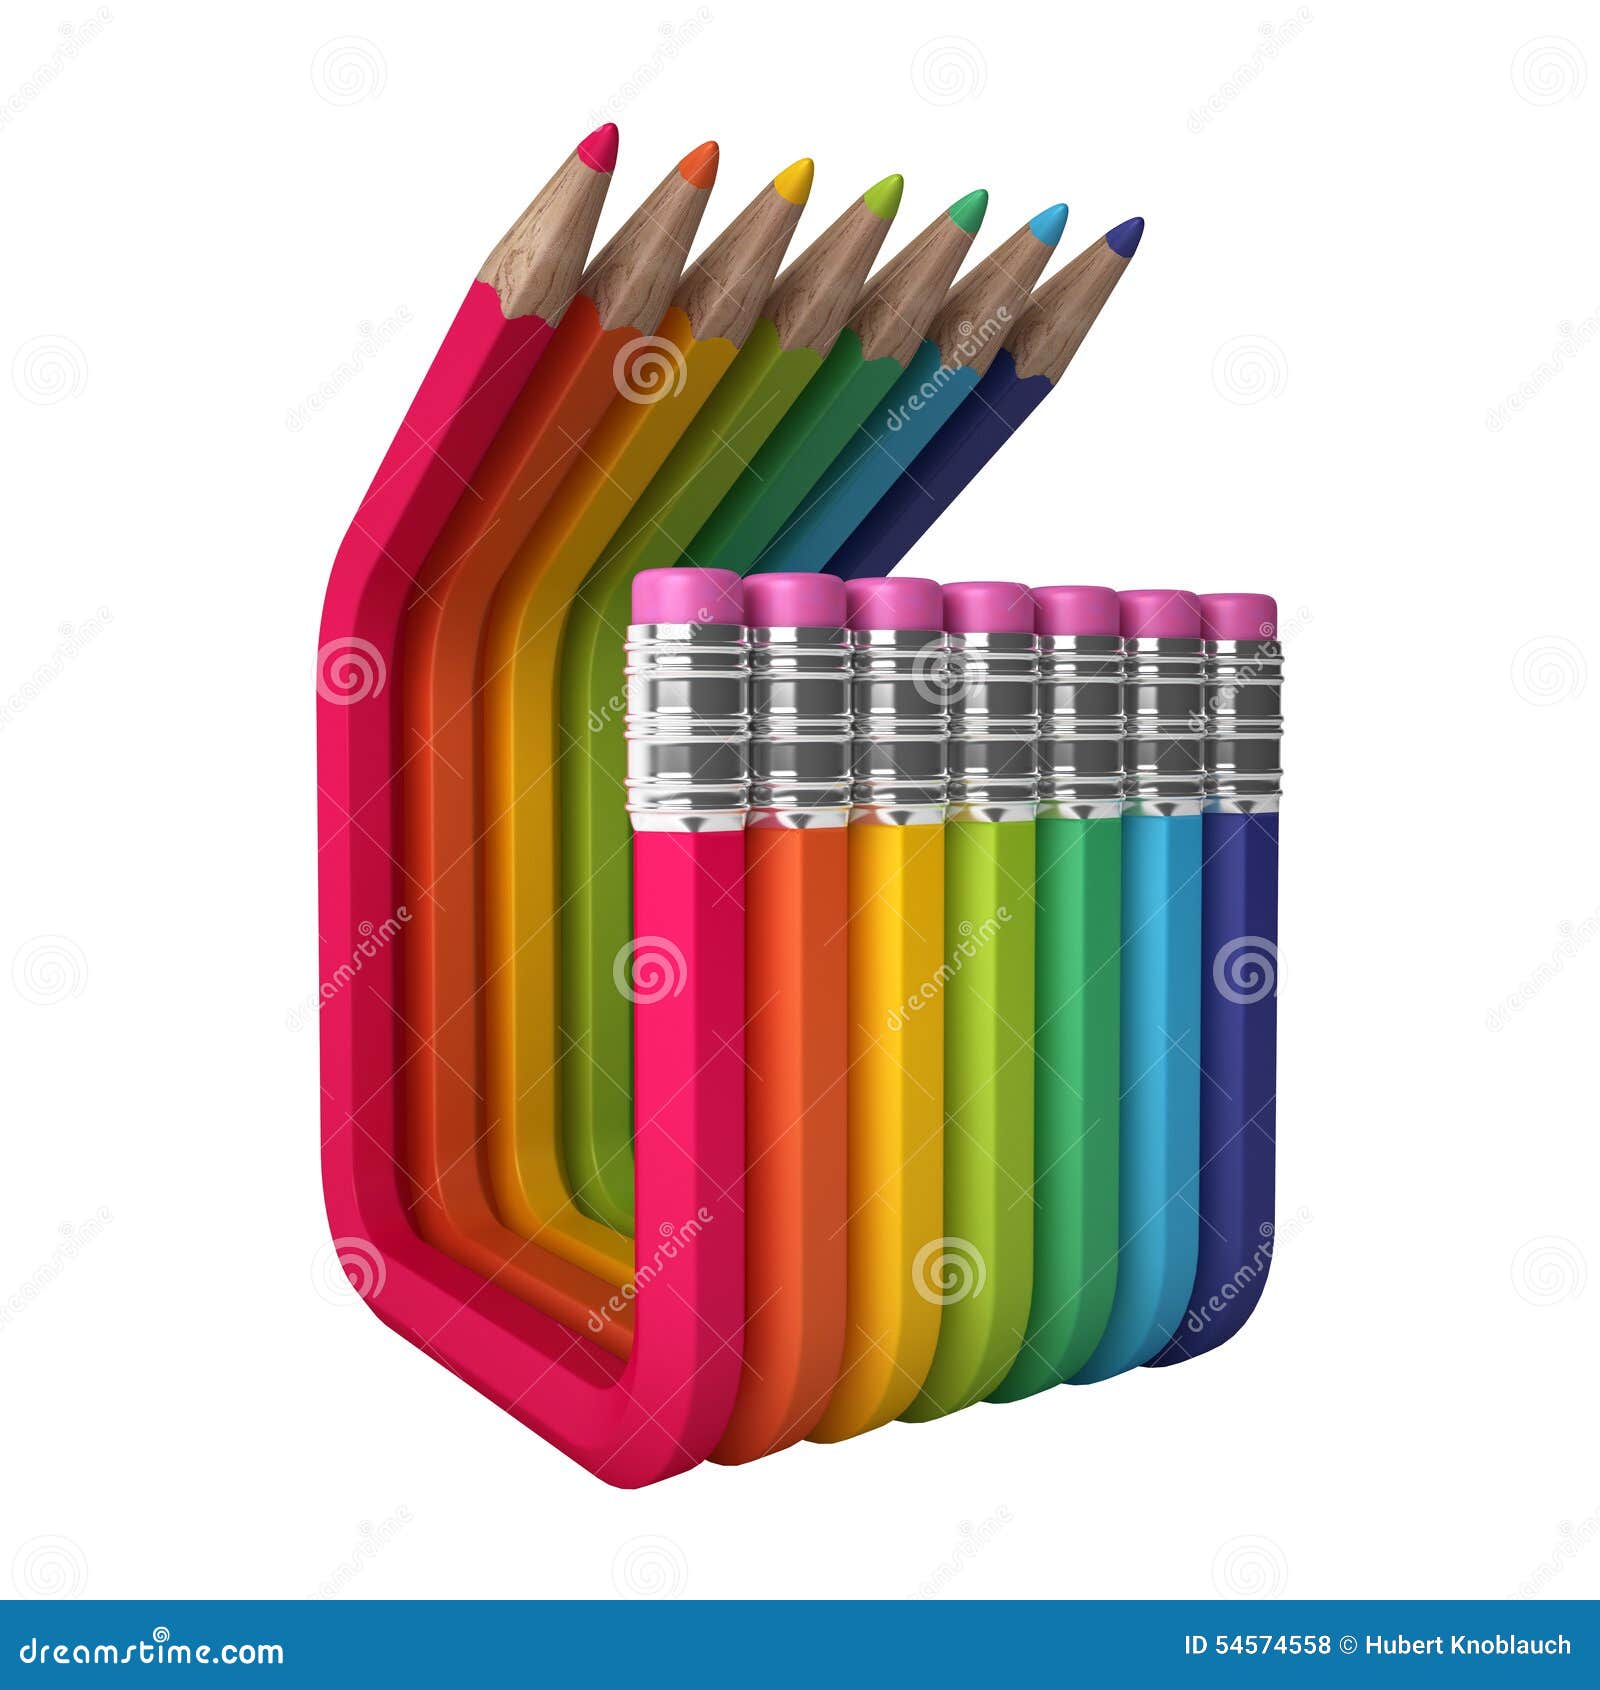 Neiging gekleurde abstracte potloden. Het beeld toont de creatieve industrie op een abstracte manier